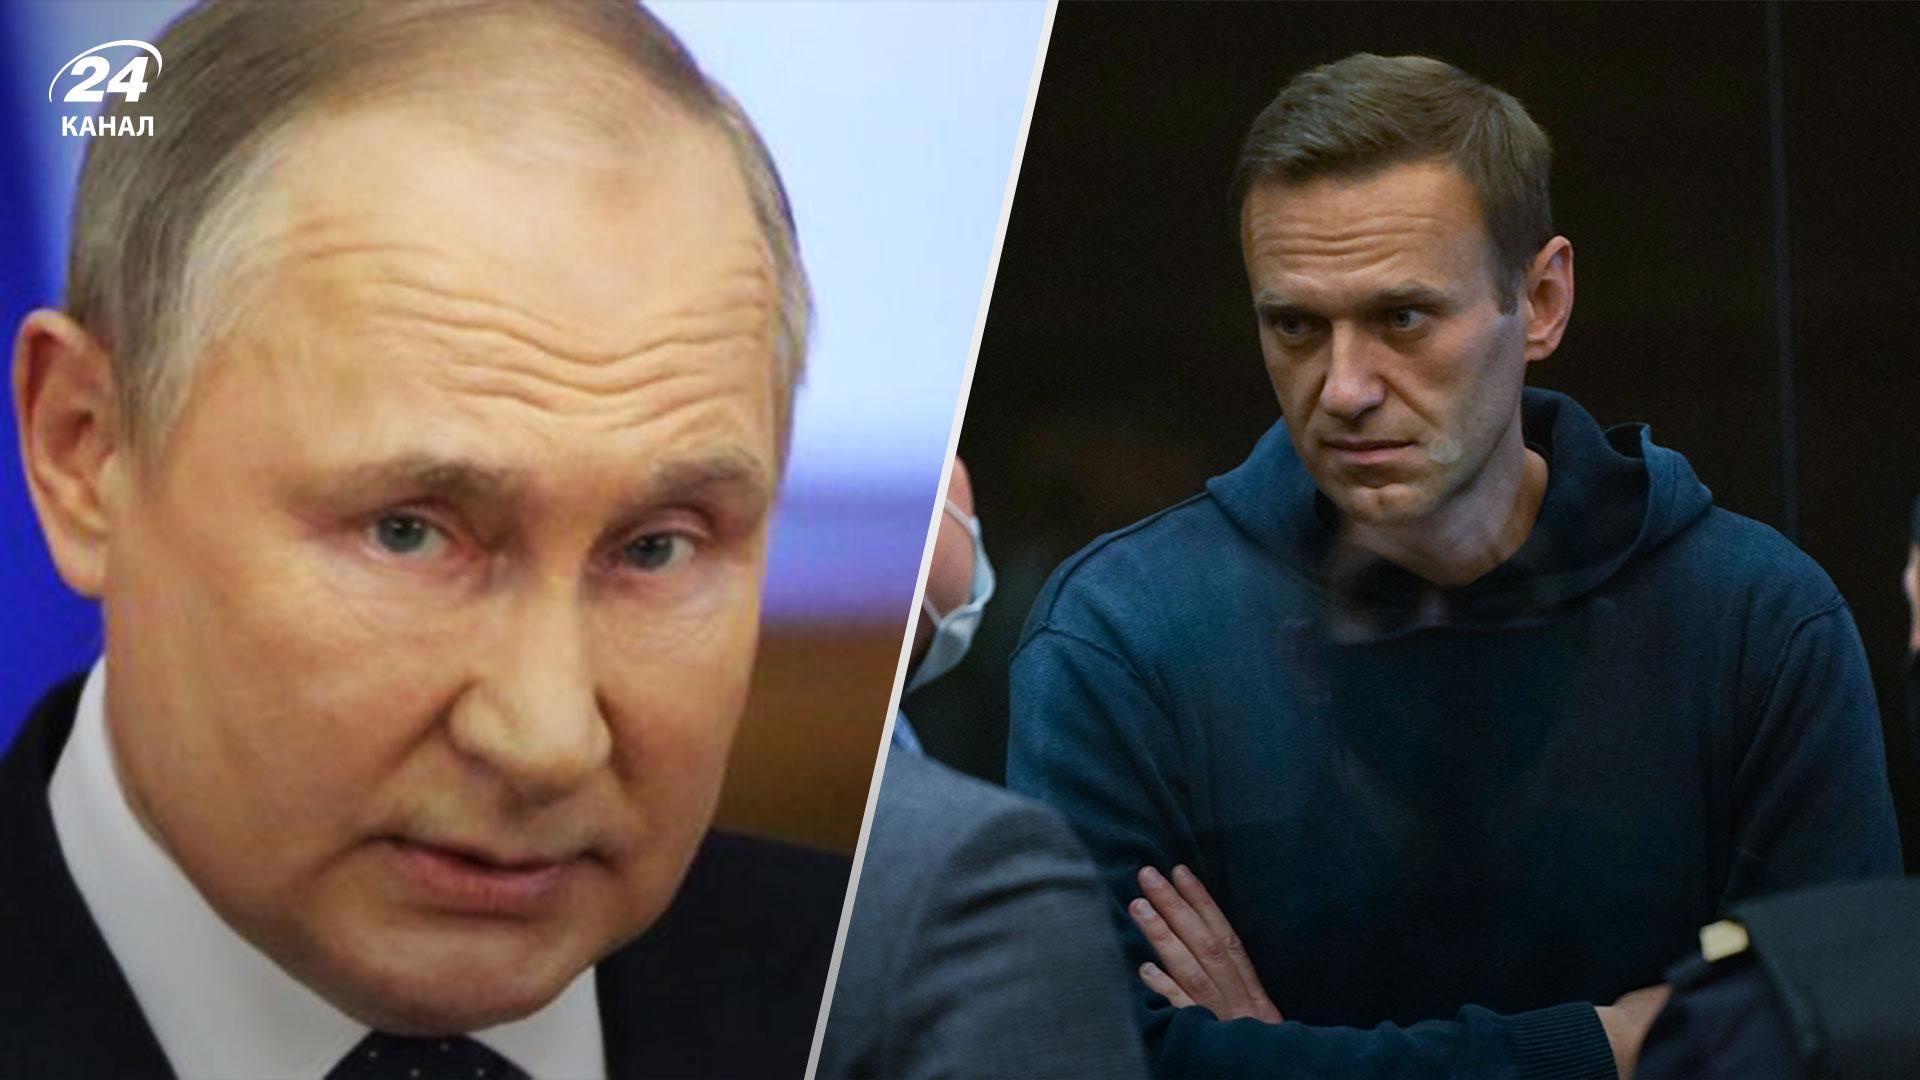 Ще 15 років тюрми: Навальному оголосили обвинувачення у справі про екстремізм